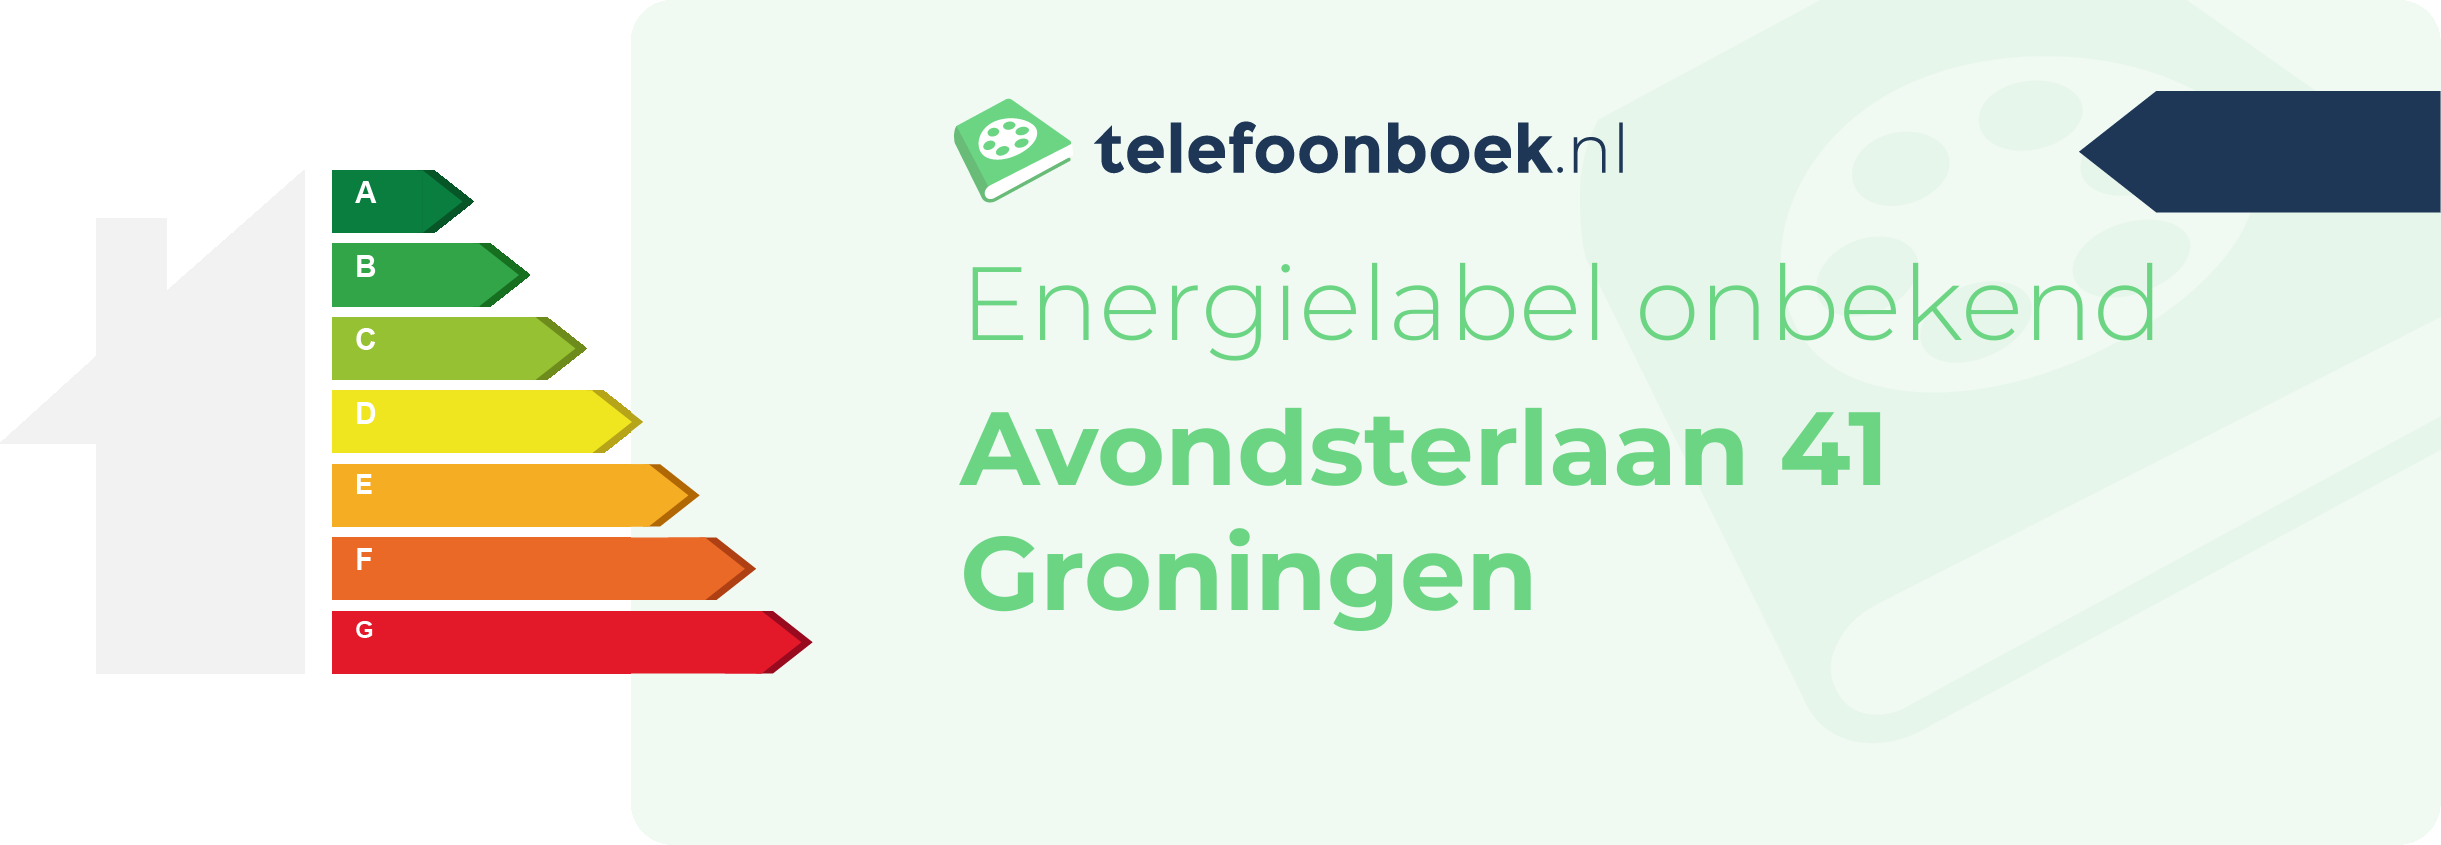 Energielabel Avondsterlaan 41 Groningen